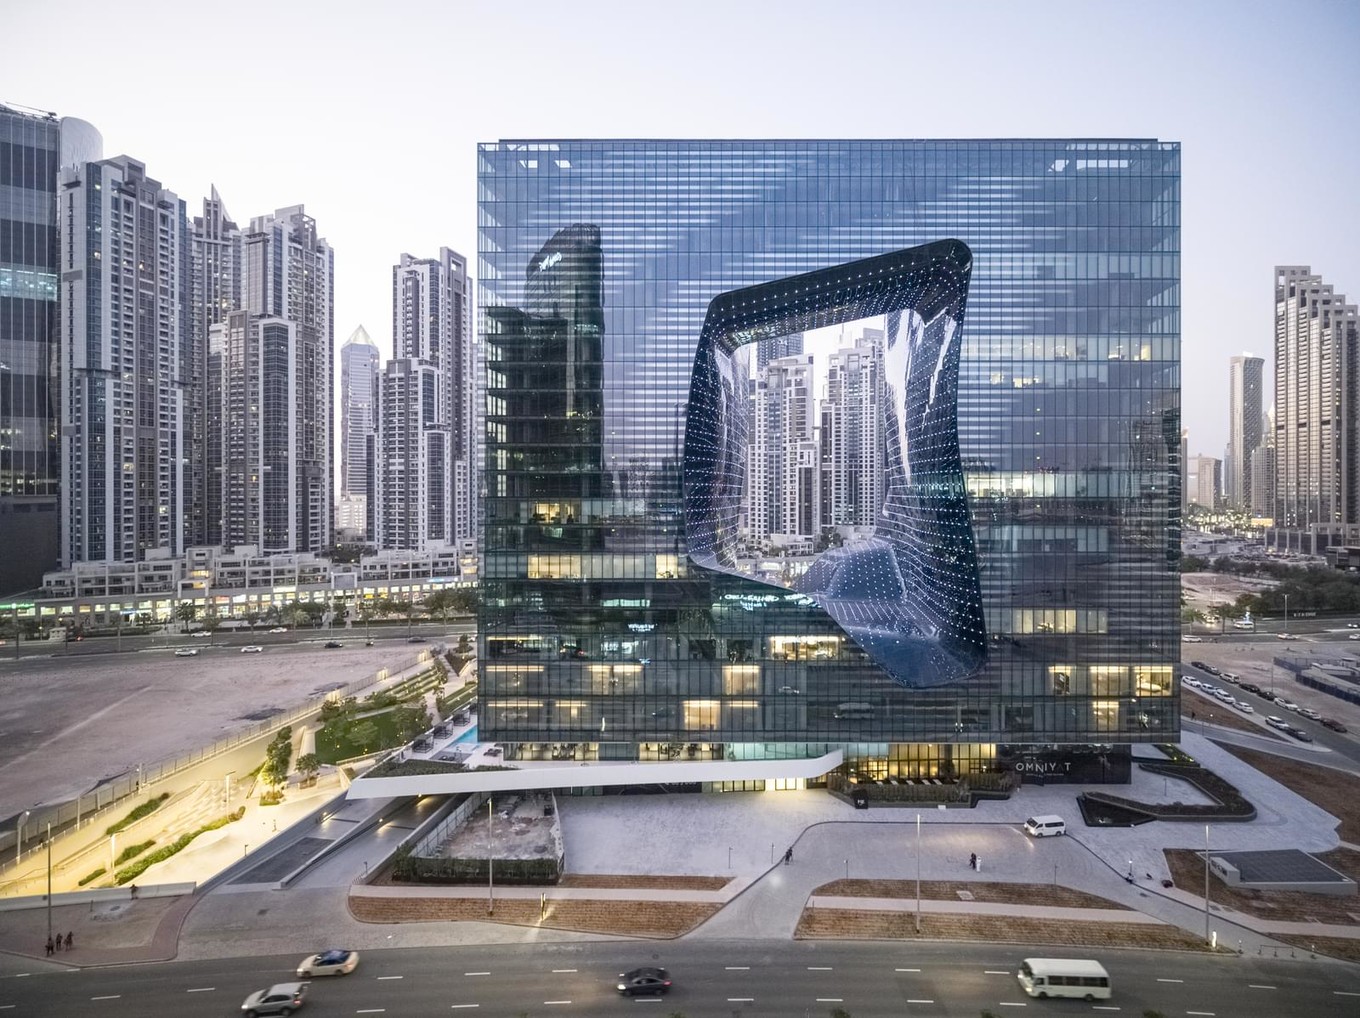 Инопланетный дизайн отеля в ОАЭ от Zaha Hadid архитектура,Заха Хадид,ОАЭ